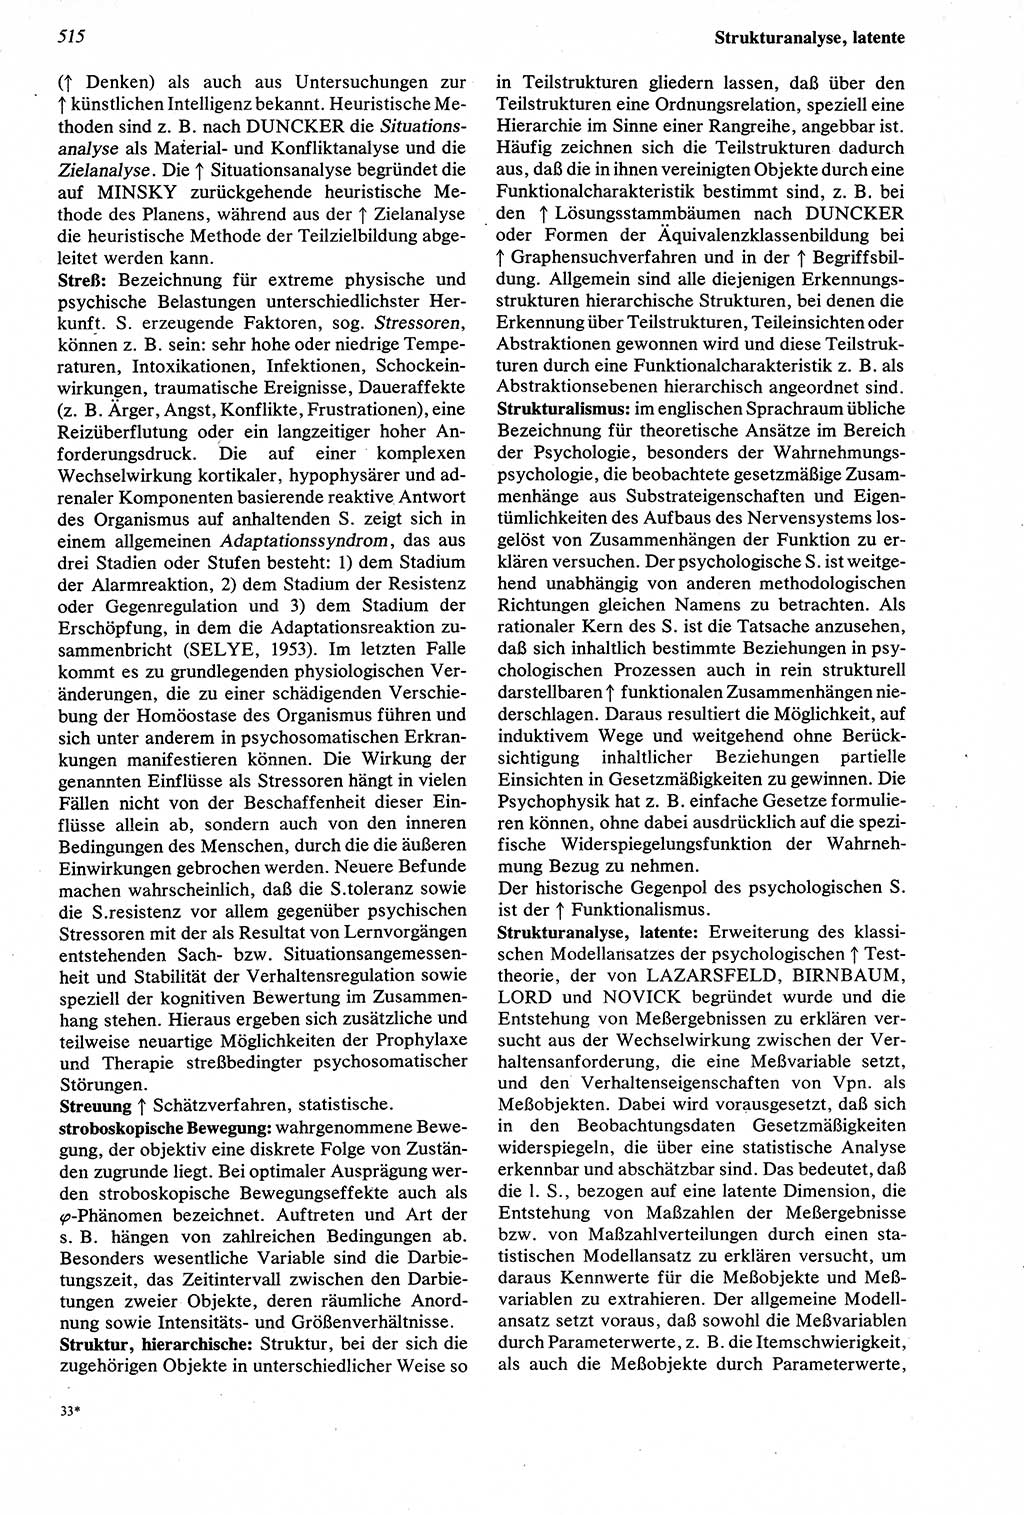 Wörterbuch der Psychologie [Deutsche Demokratische Republik (DDR)] 1976, Seite 515 (Wb. Psych. DDR 1976, S. 515)